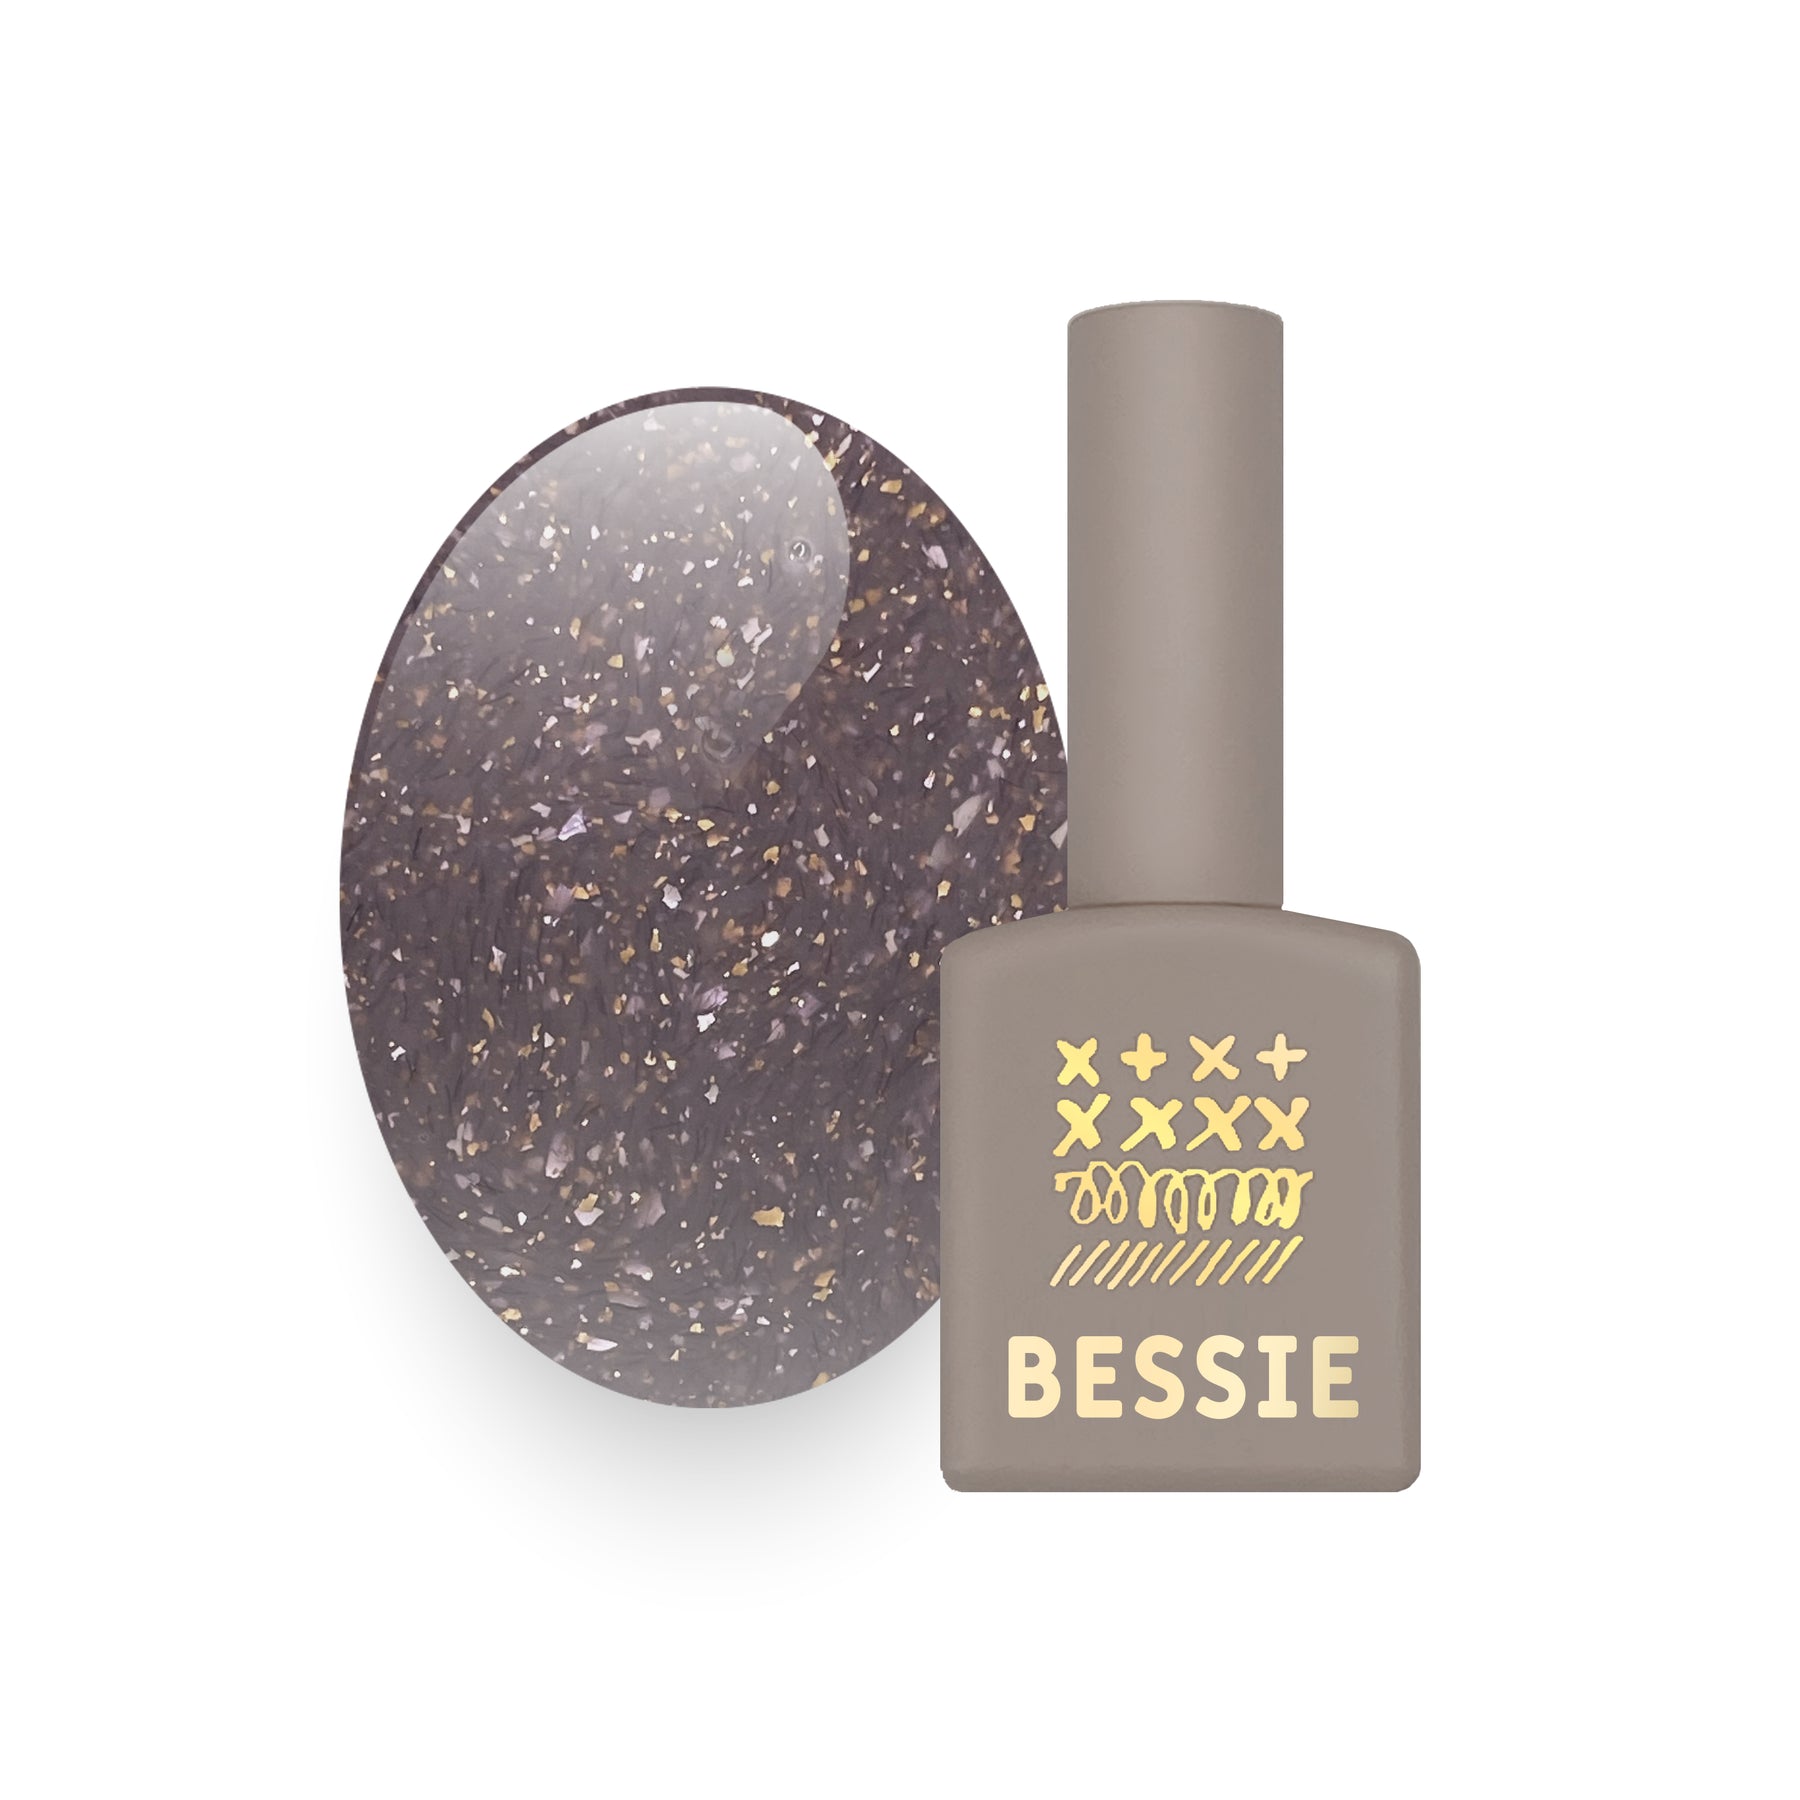 Bessie Tweed Gel Collection - 14pc set / 1pc